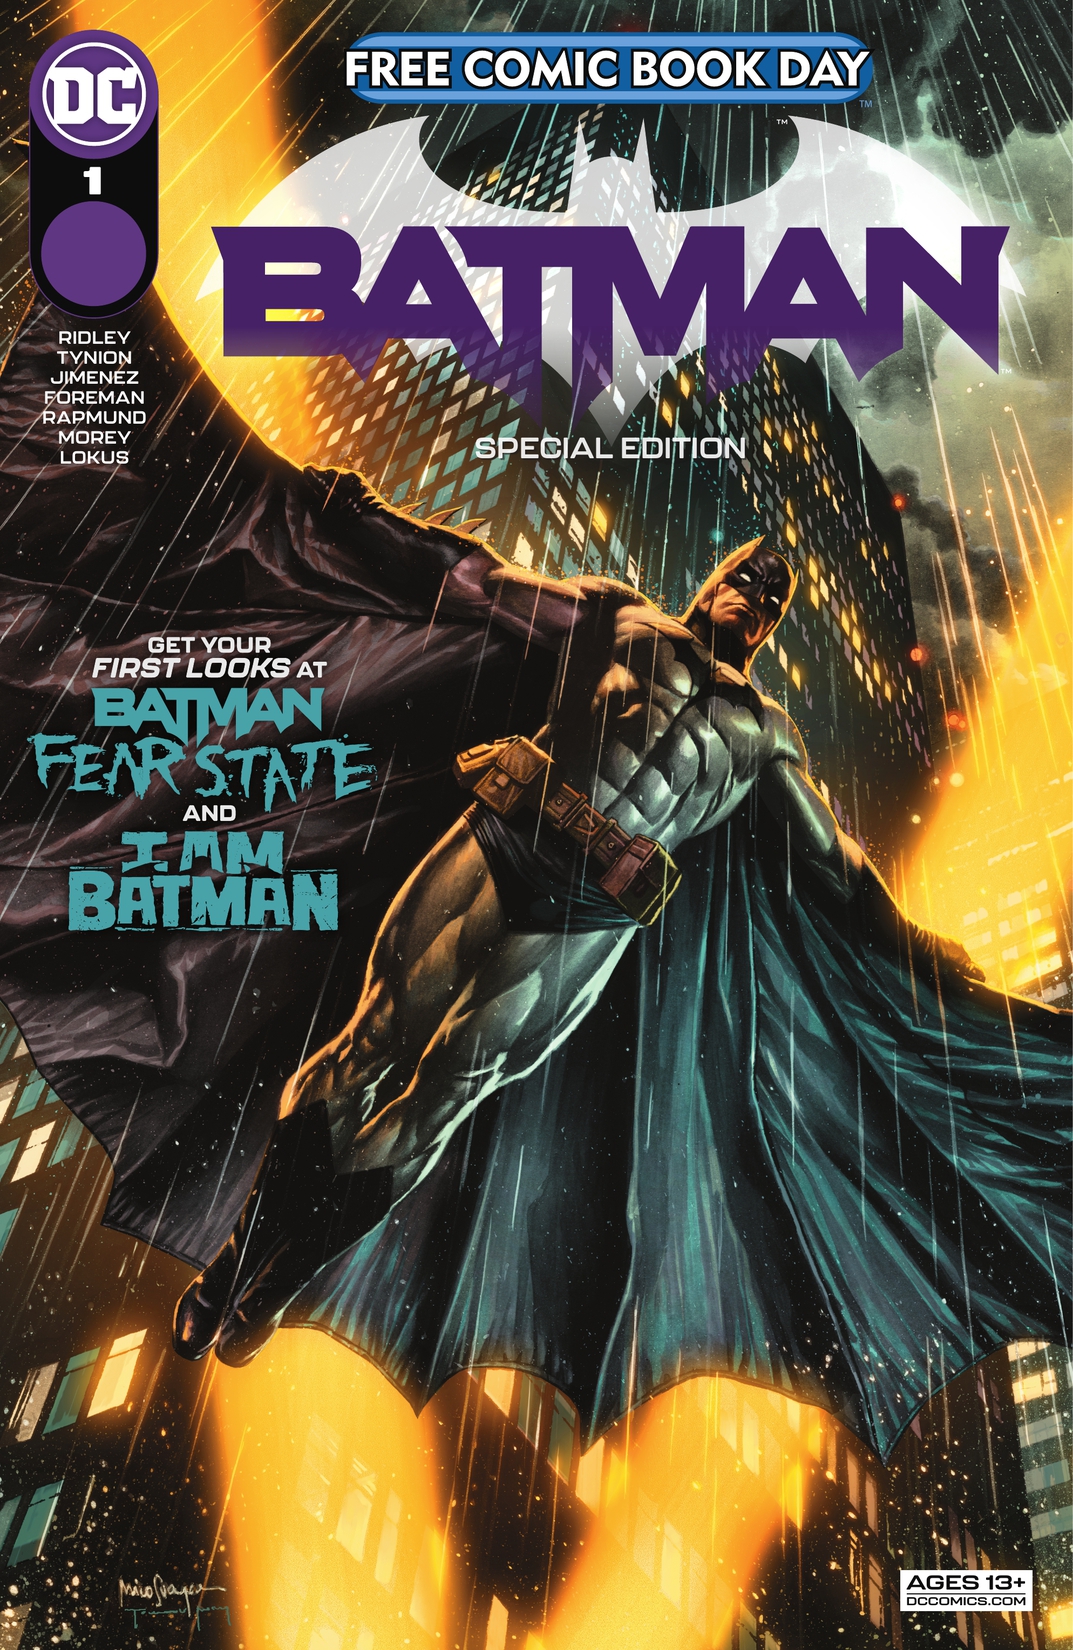 Batman Special Edition (FCBD) #1 preview images